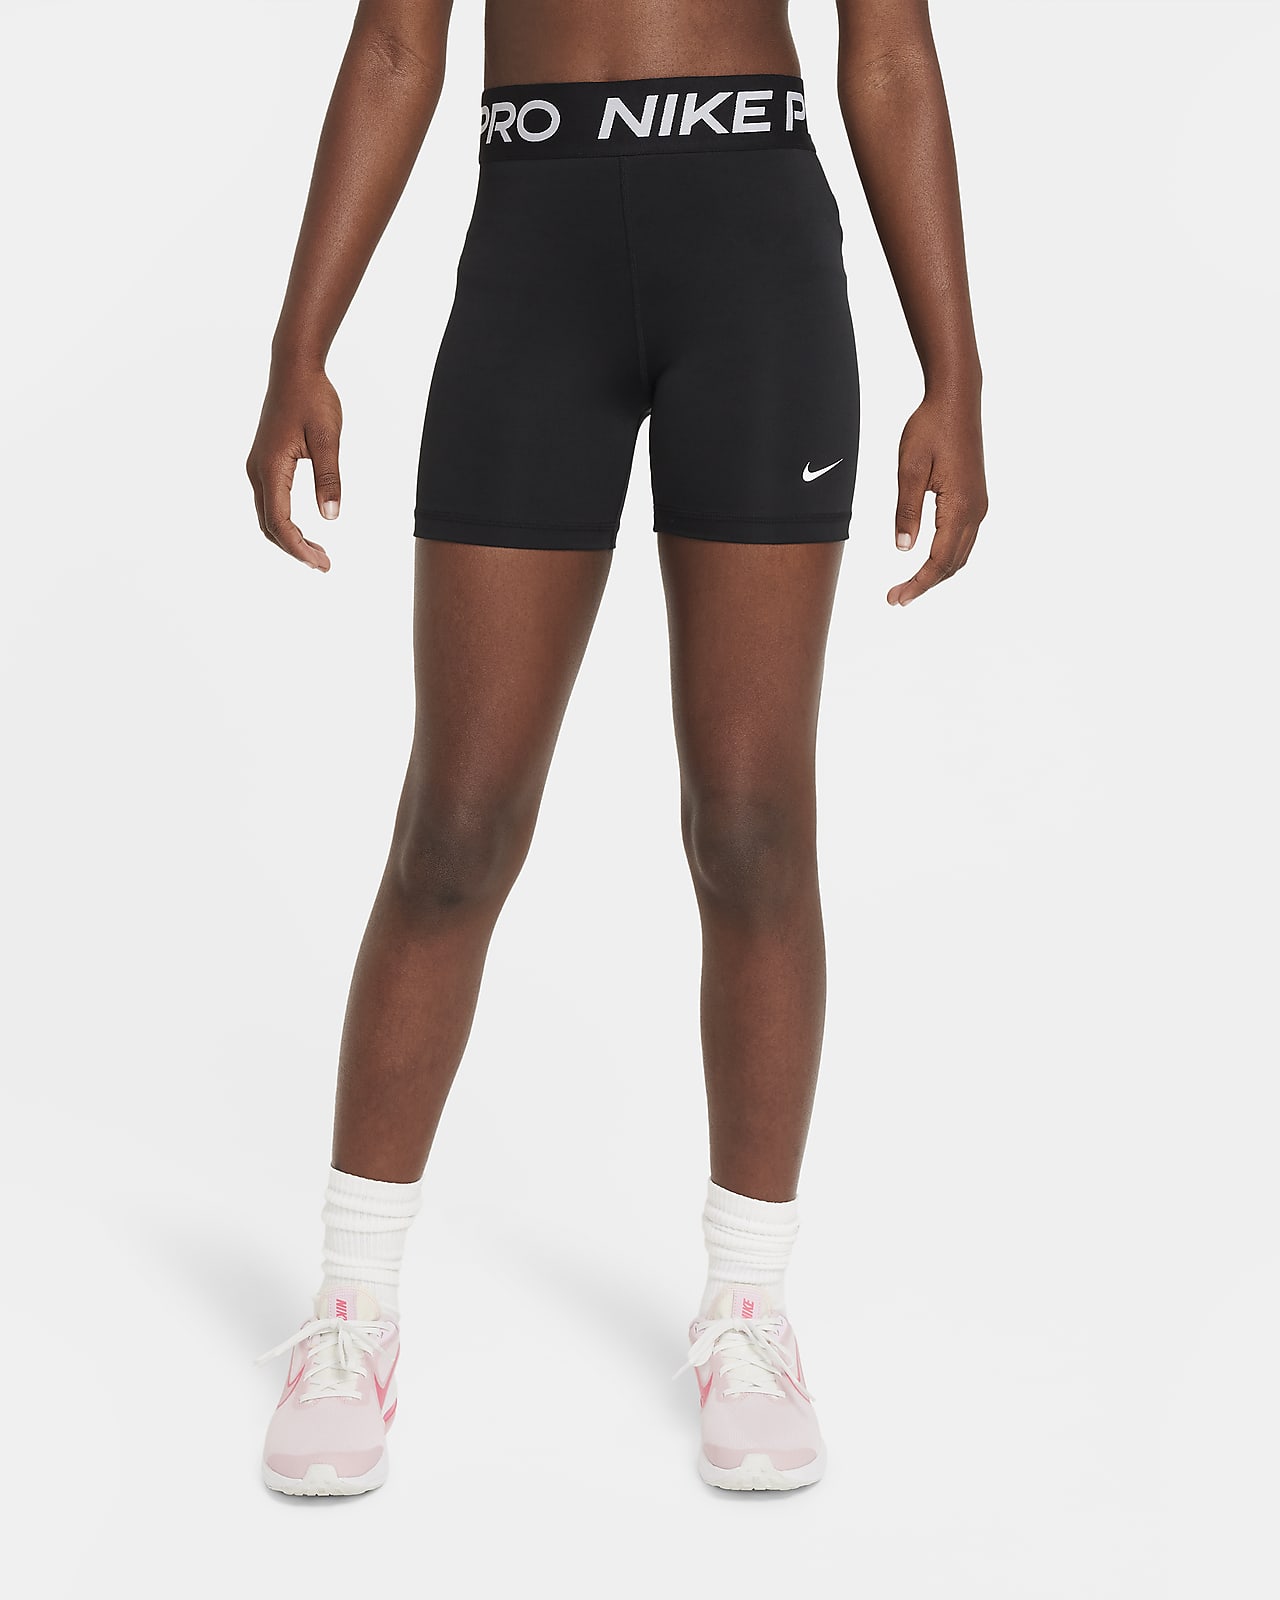 Nike Pro Meisjesshorts (10 cm)